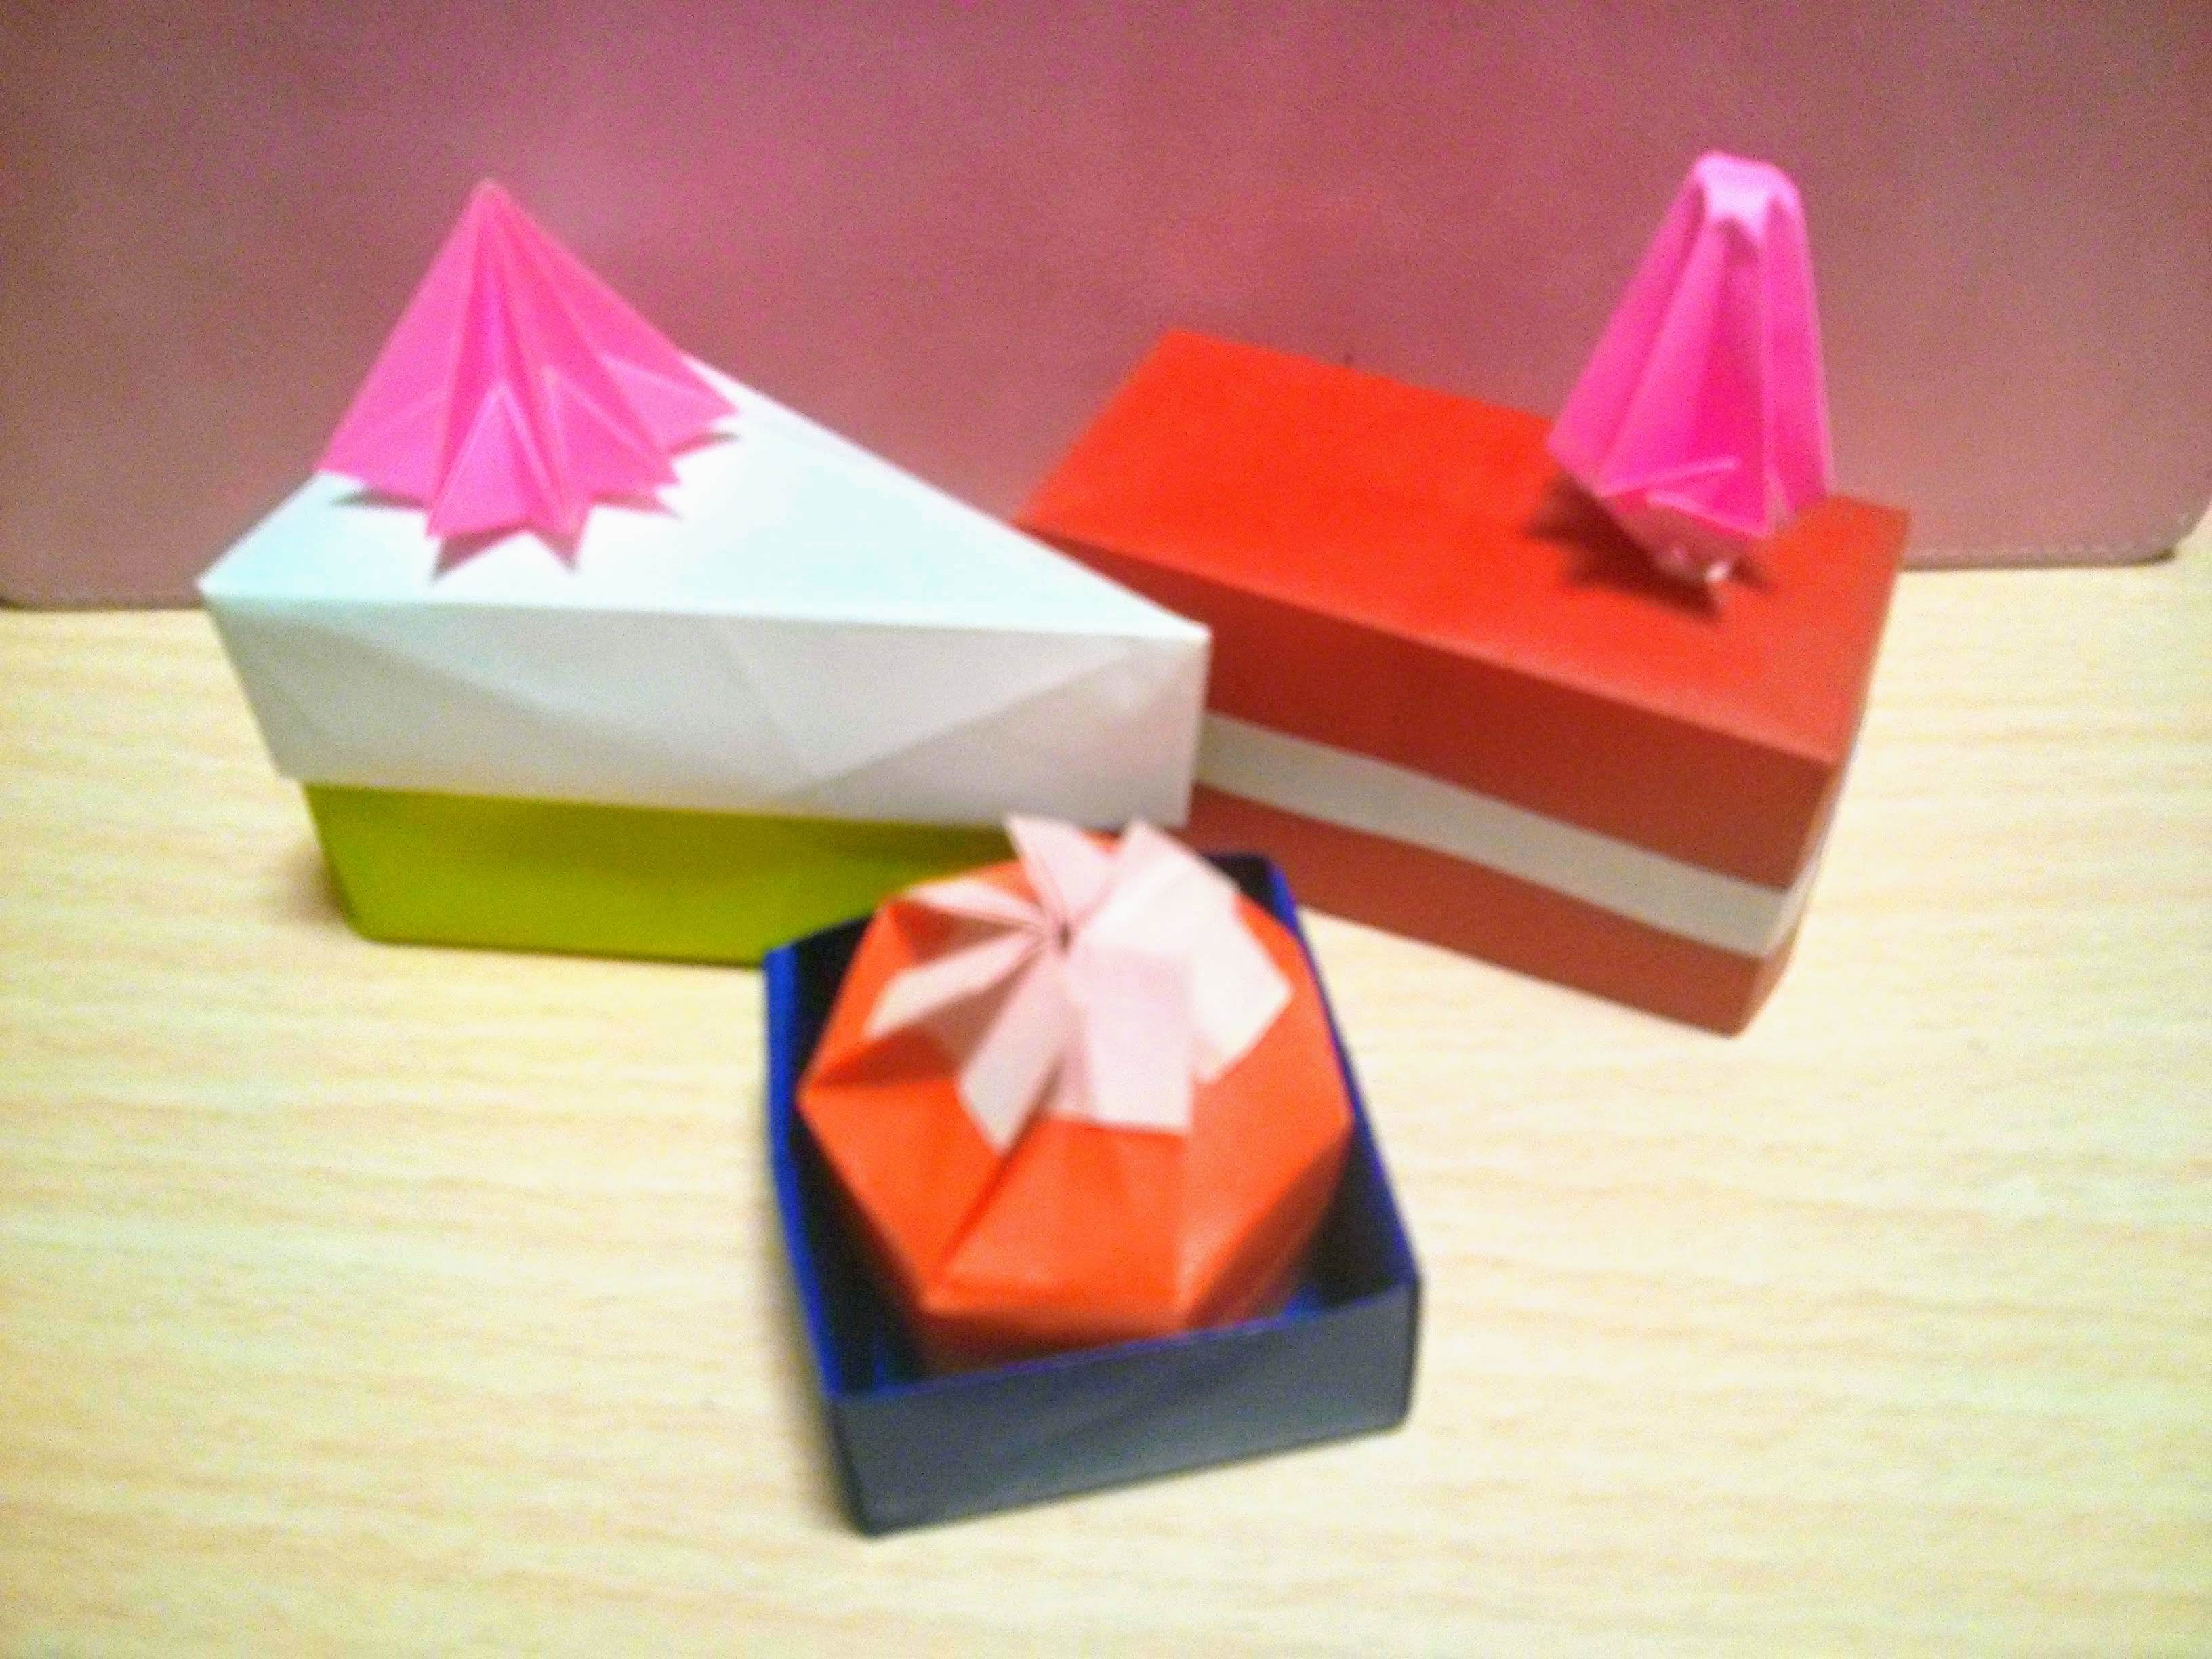 折り紙で作る ケーキ の折り方5選 可愛いショートケーキの作り方とは 暮らし の